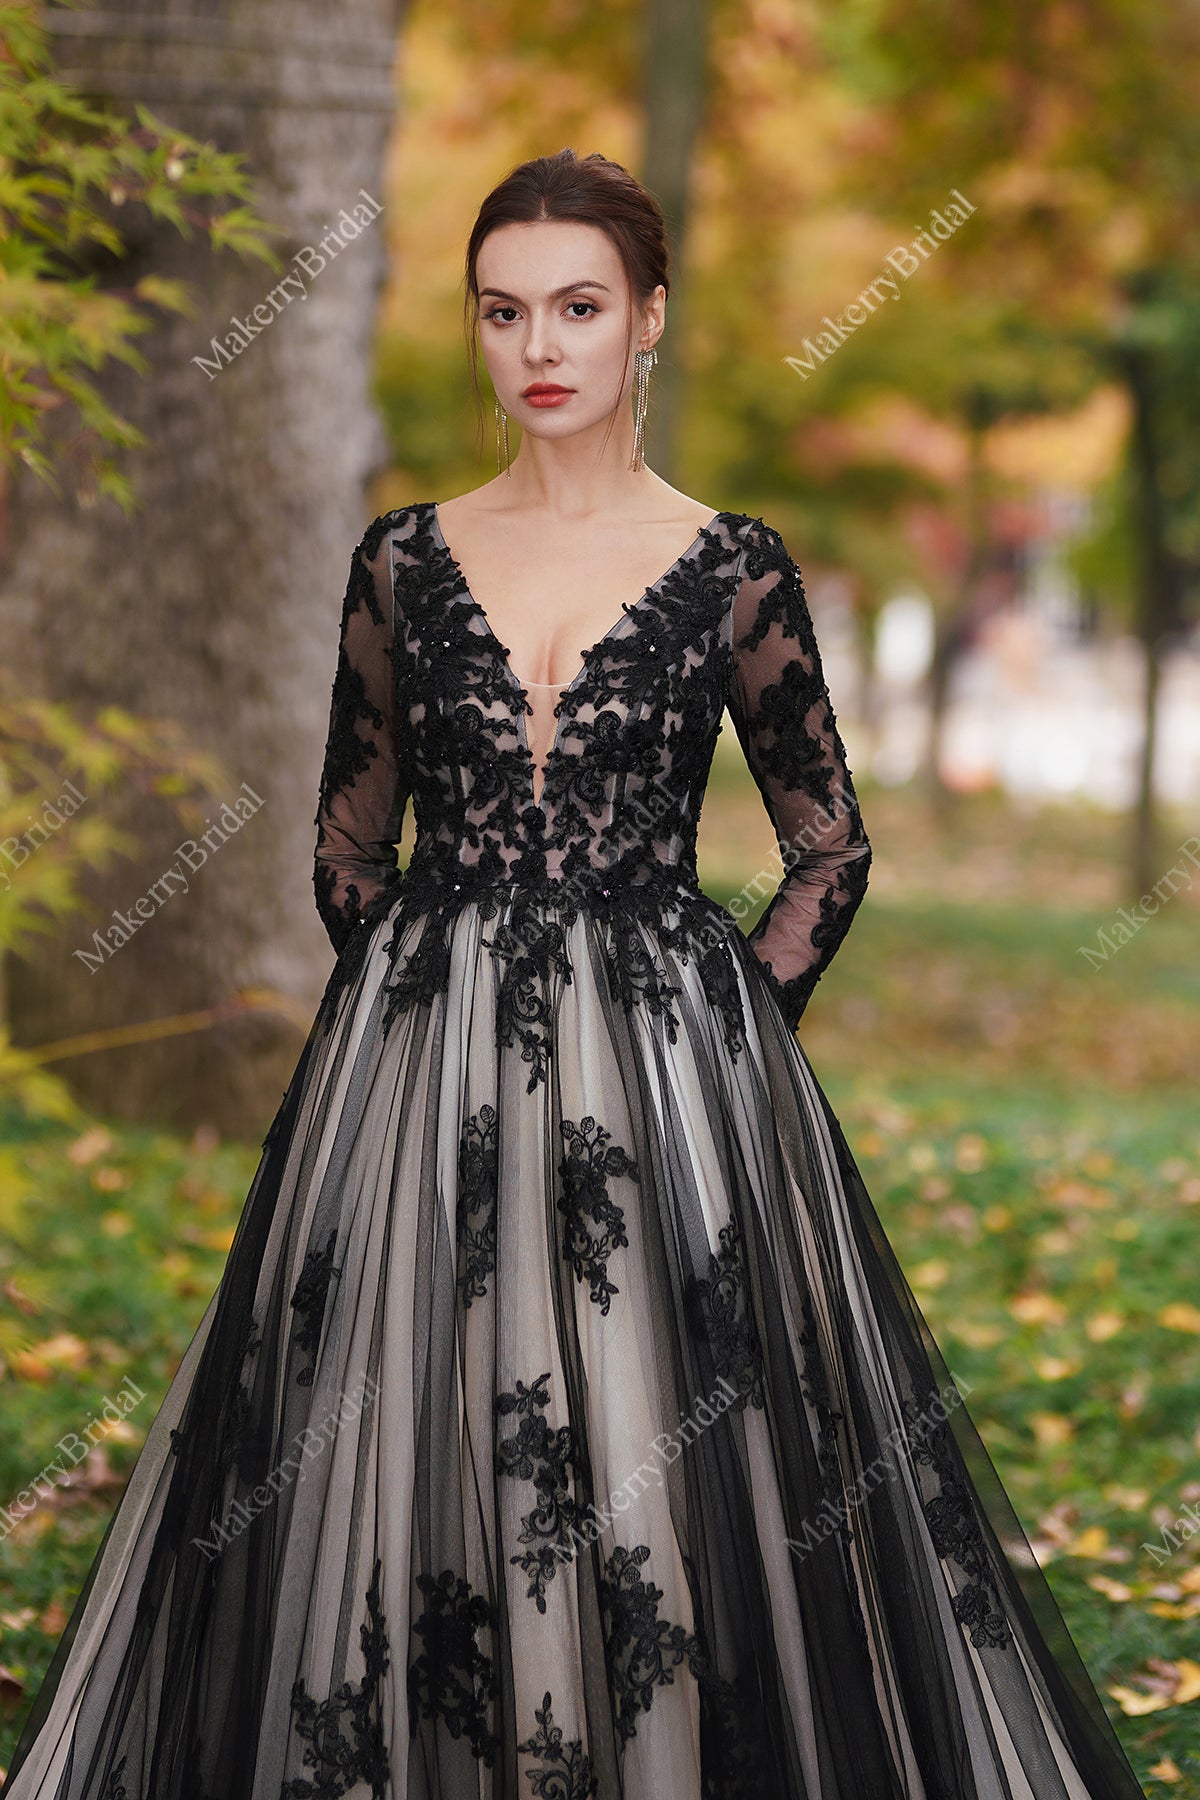 Designer Black Lace Applique Evening Dresses with Removable Train